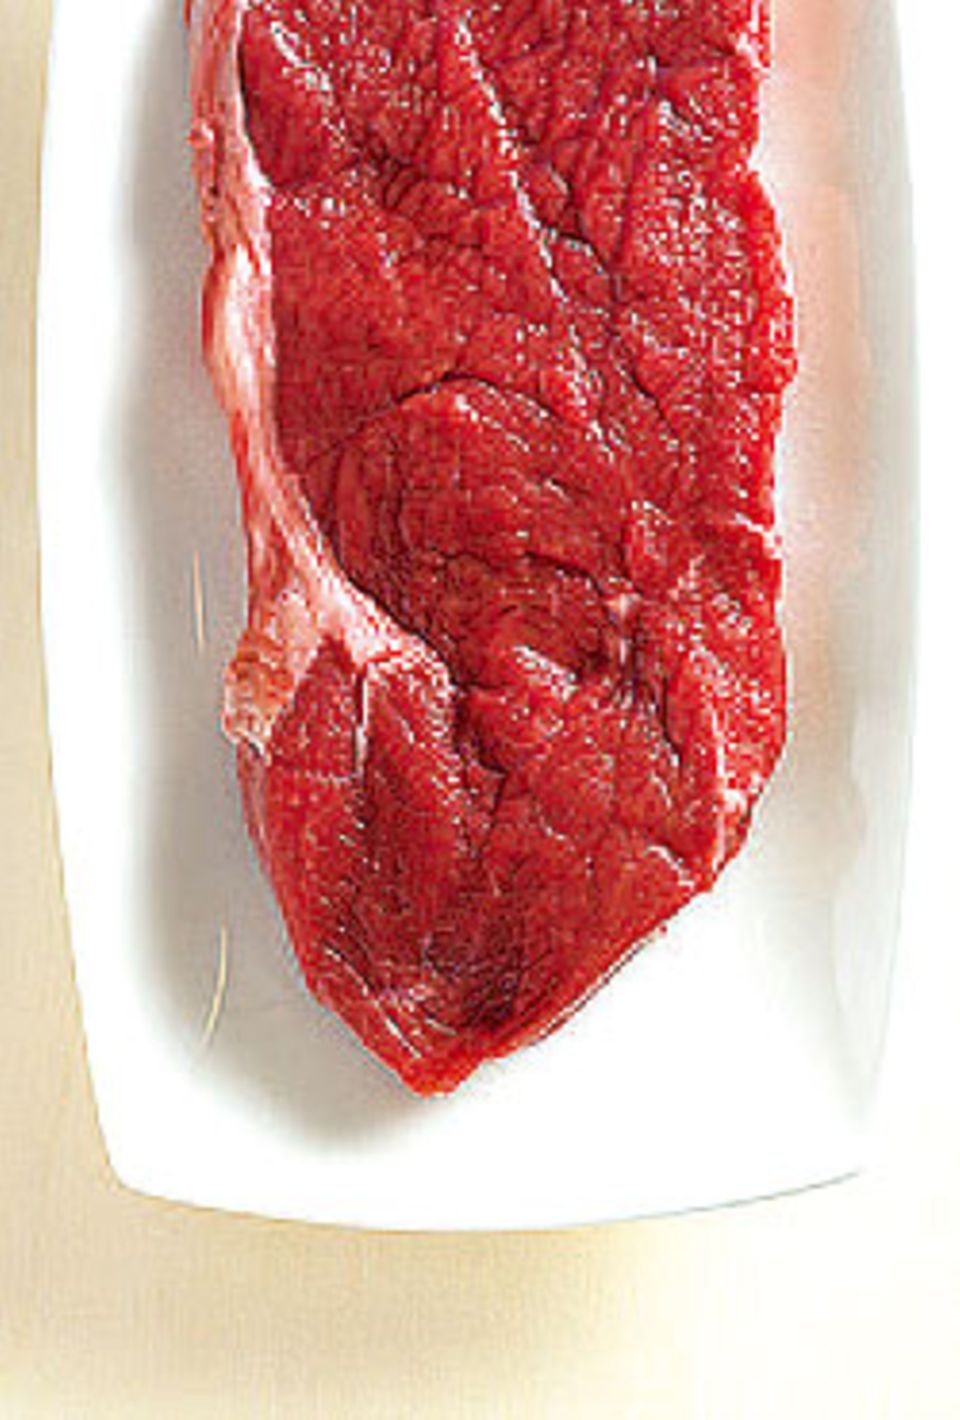 3. Rotes Fleisch fördert Kraft und Ausdauer.